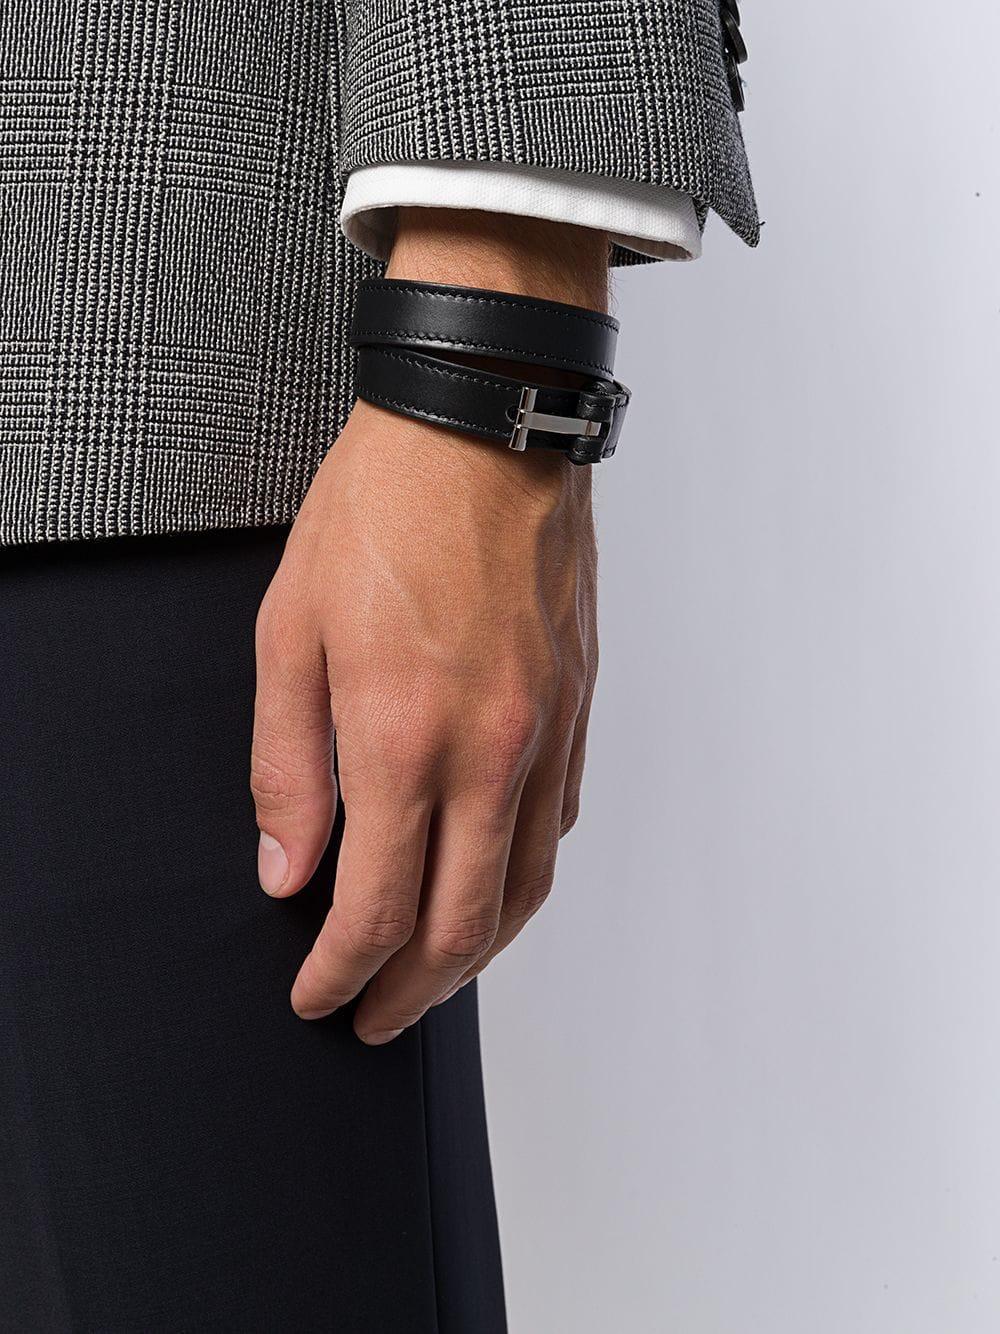 Tom Ford Leather T Lock Bracelet in Black for Men - Lyst